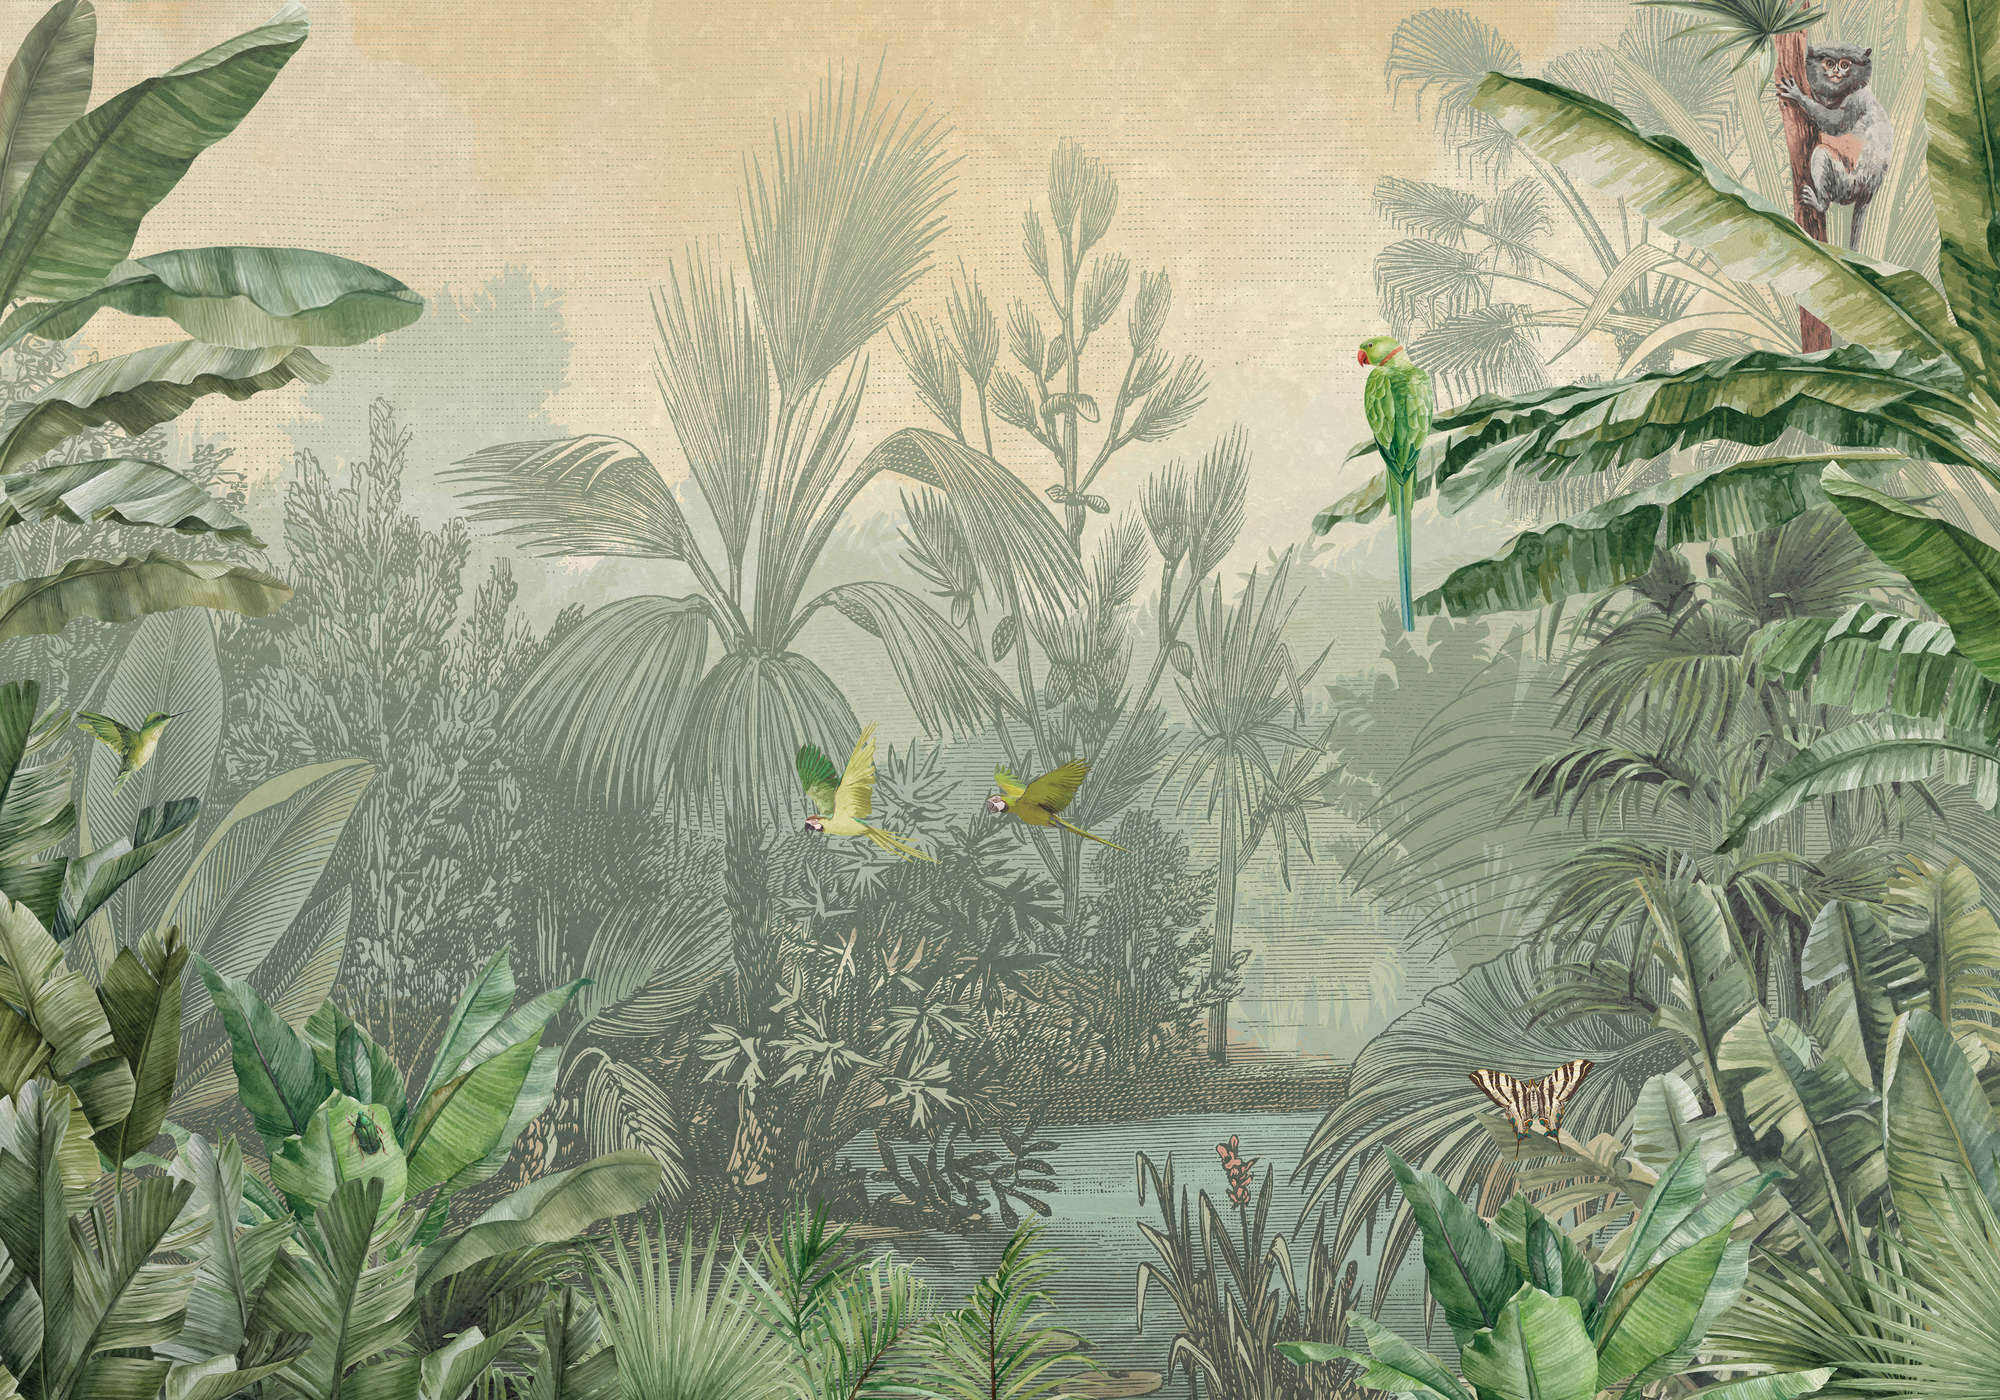             Grüne Fototapete Dschungel Palmen & Papageien im Zeichenstil
        